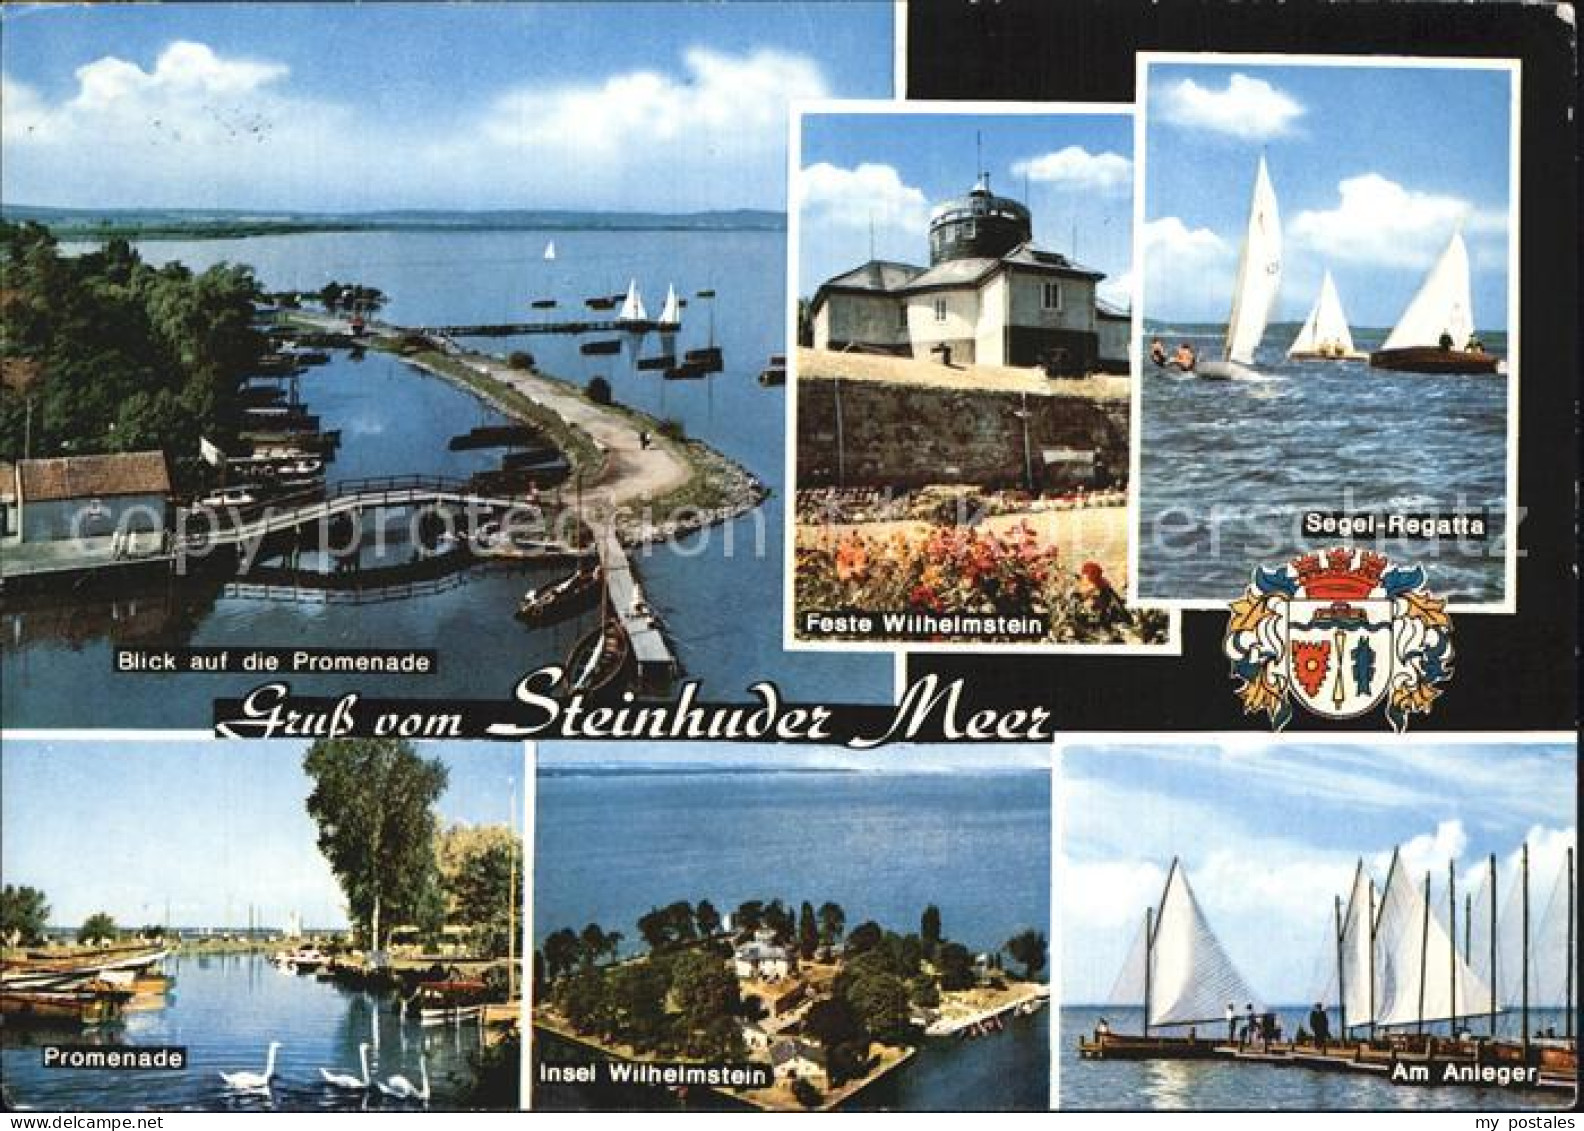 72462335 Steinhuder Meer Promenade Feste Wilhelmstein Segelregatta Insel Wilhelm - Steinhude